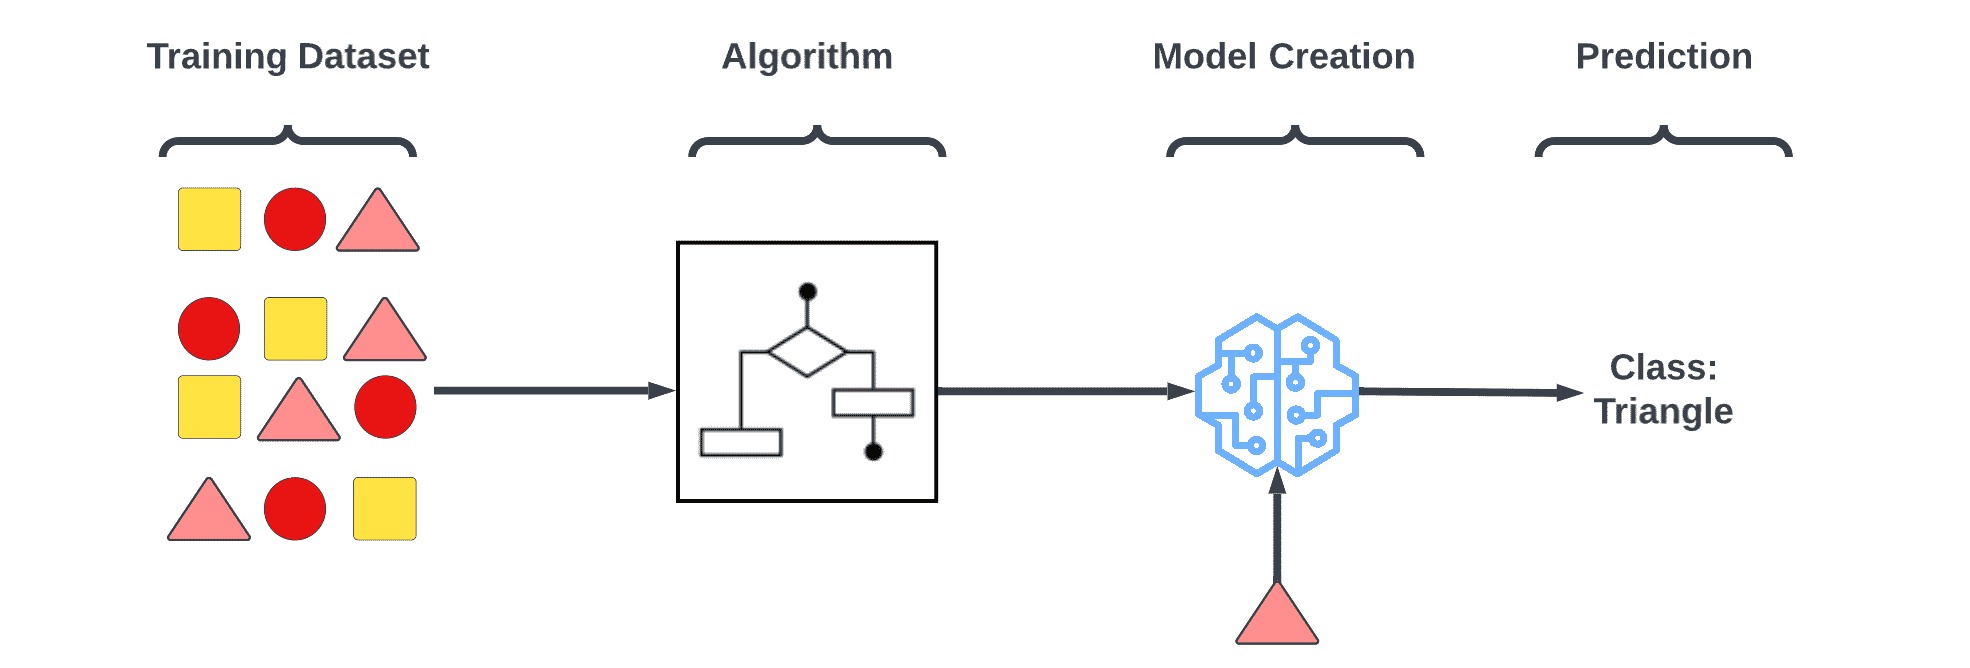 Supervised Learning - Machine Learning Algorithm